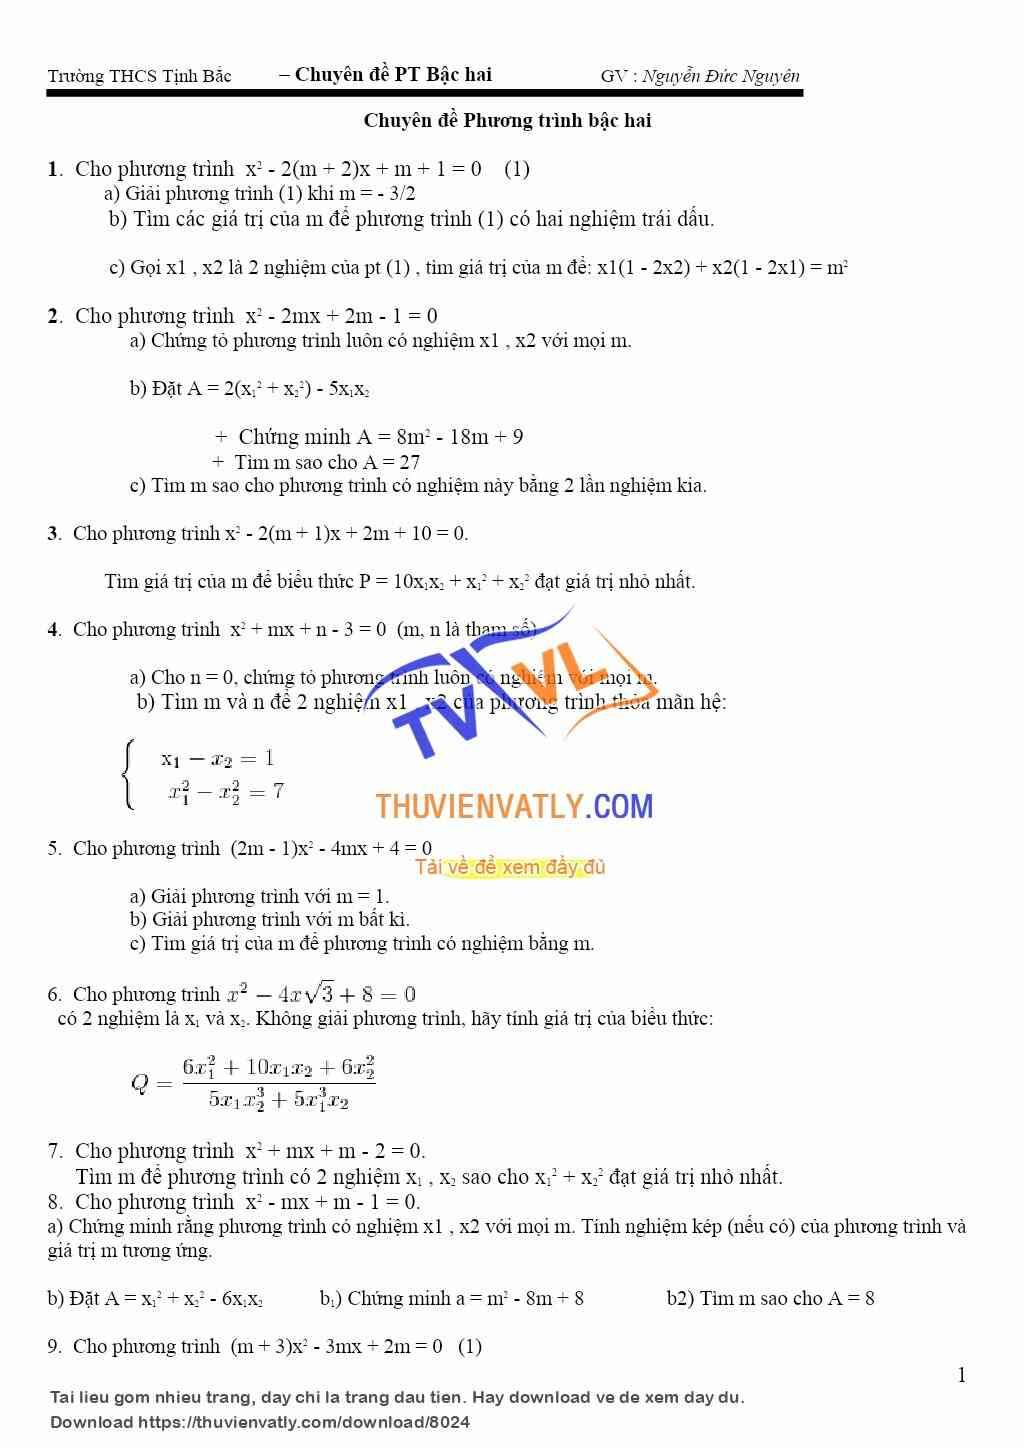 Hệ thức Viet và các bài tập về phương trình bậc 2